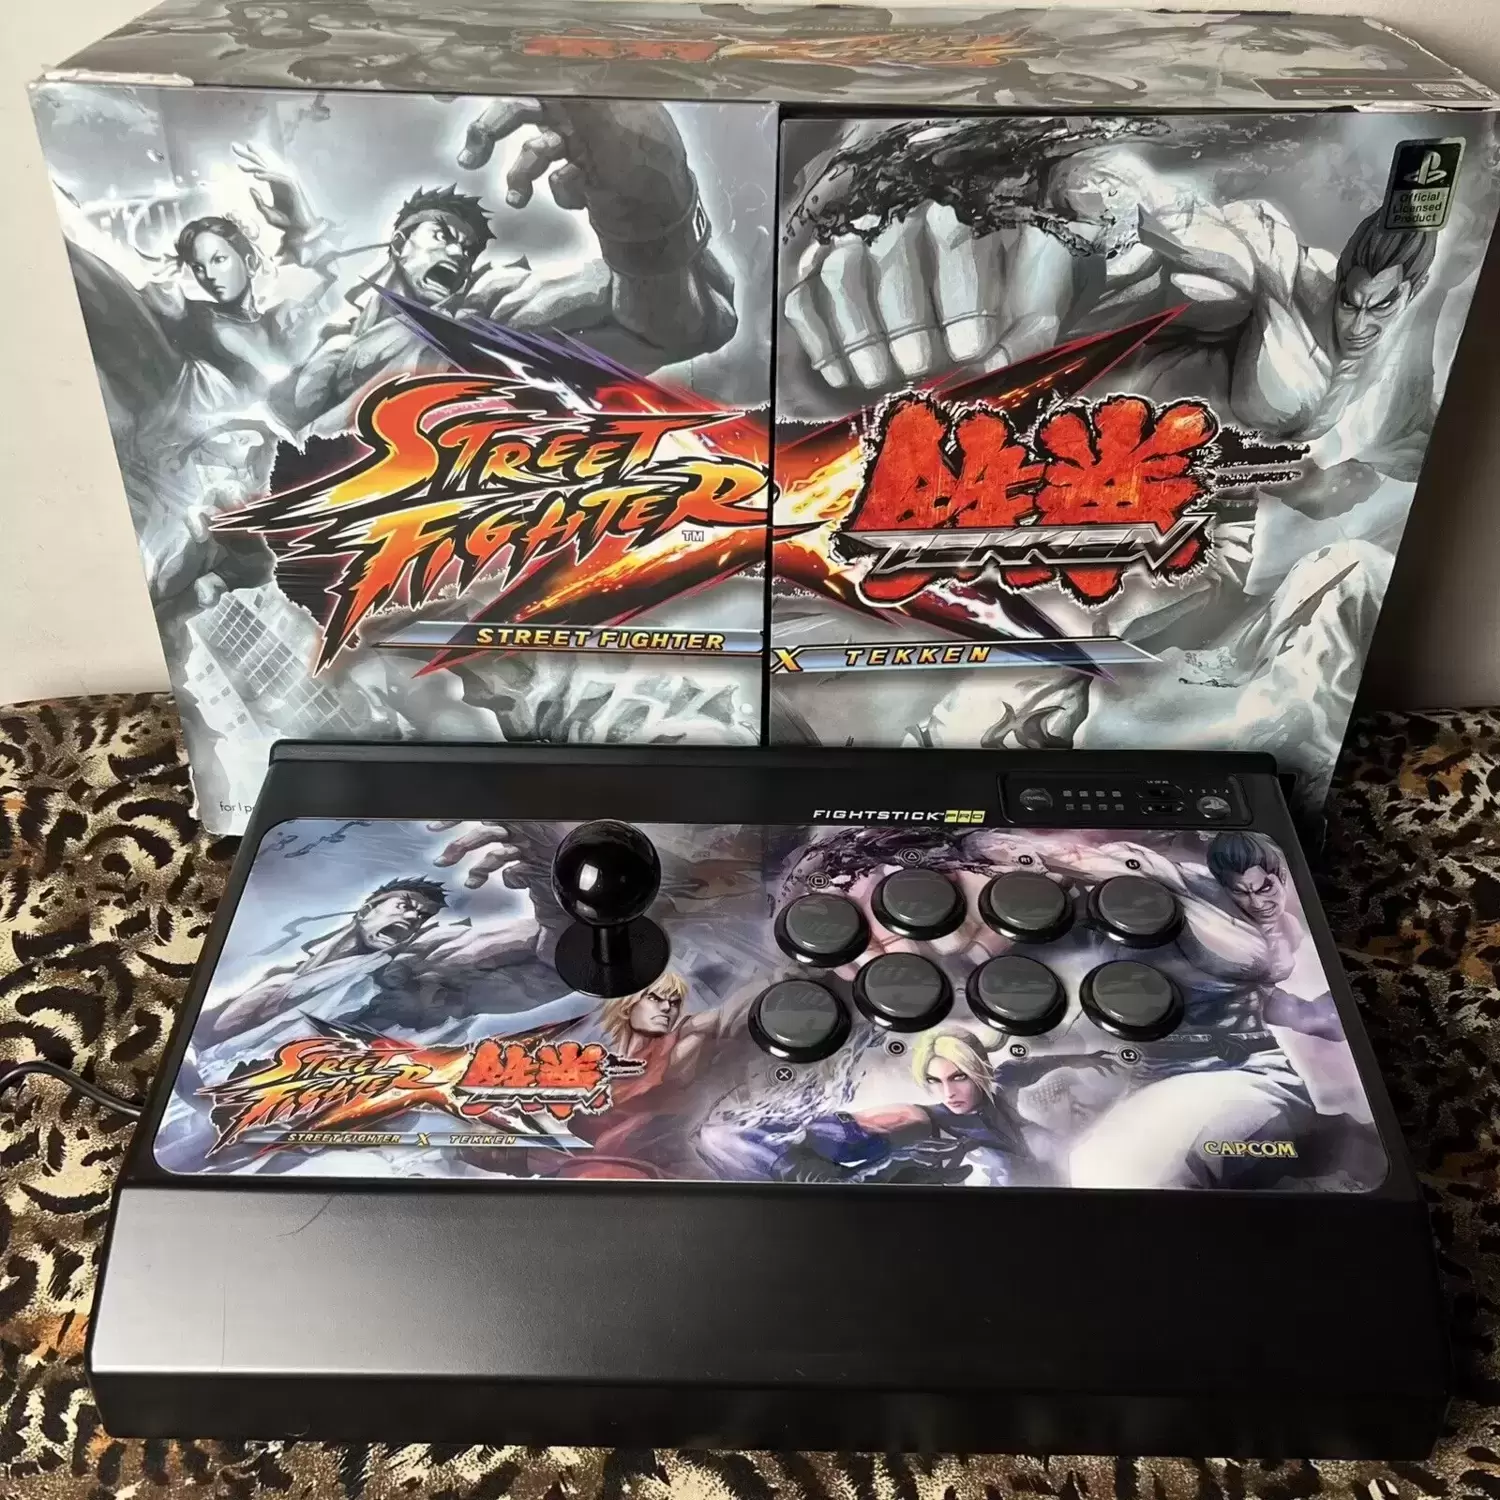 Arcade Stick - Mad Catz Street Fighter X Tekken Arcade Fighting Stick Pro Versus Edition